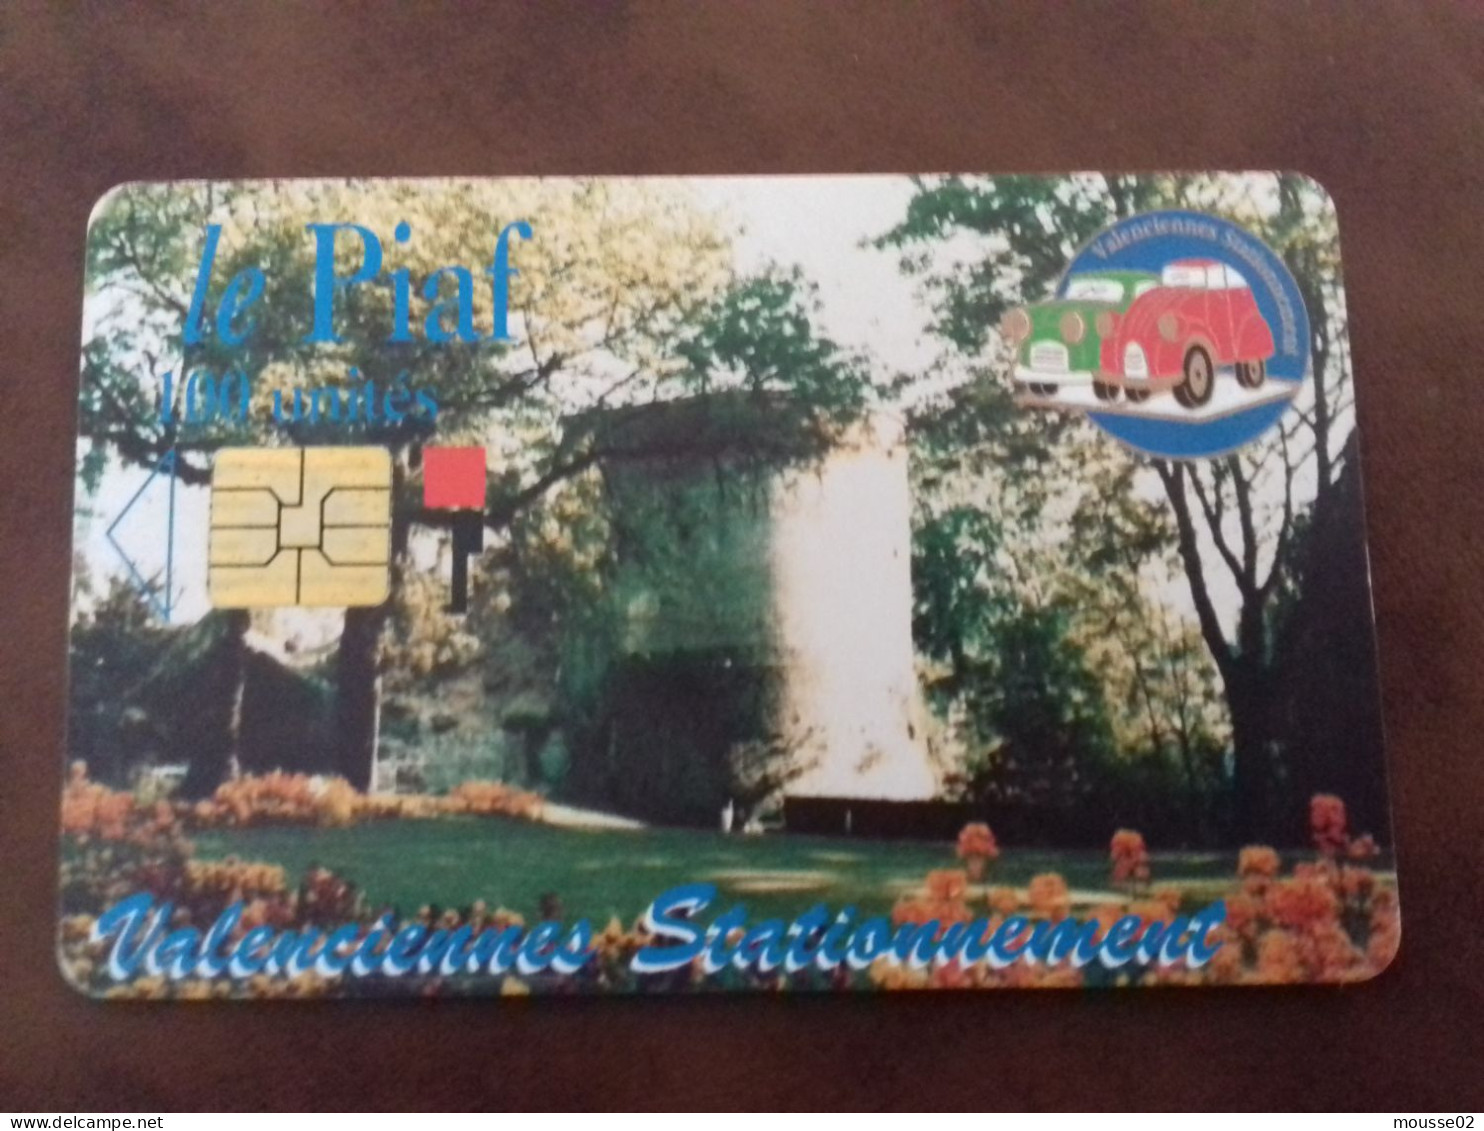 Carte De Stationnement  PIAF VALENCIENNES DU 02/1997 - Parkkarten